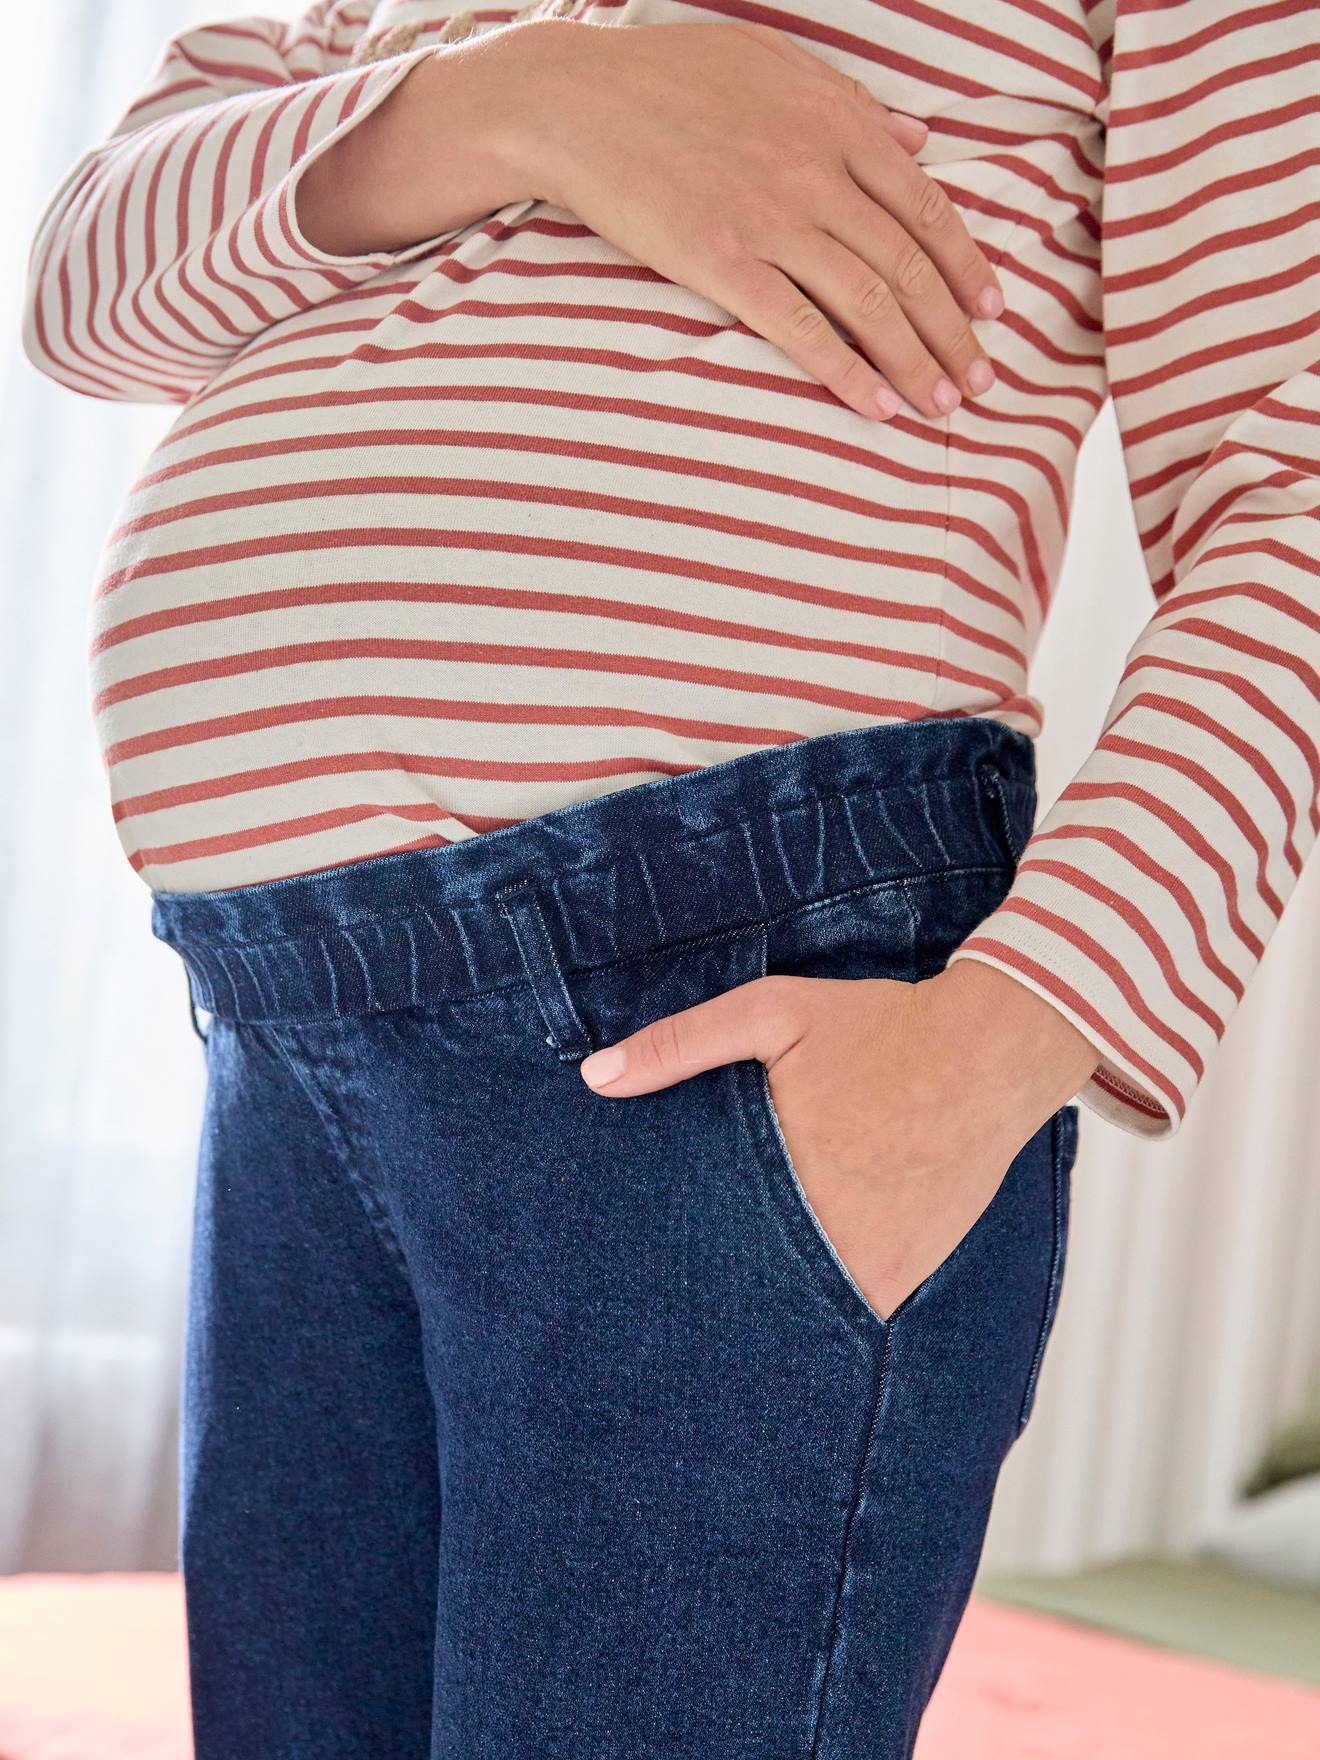 Jeans mom, faixa sem costuras, para grávida-Roupa grávida